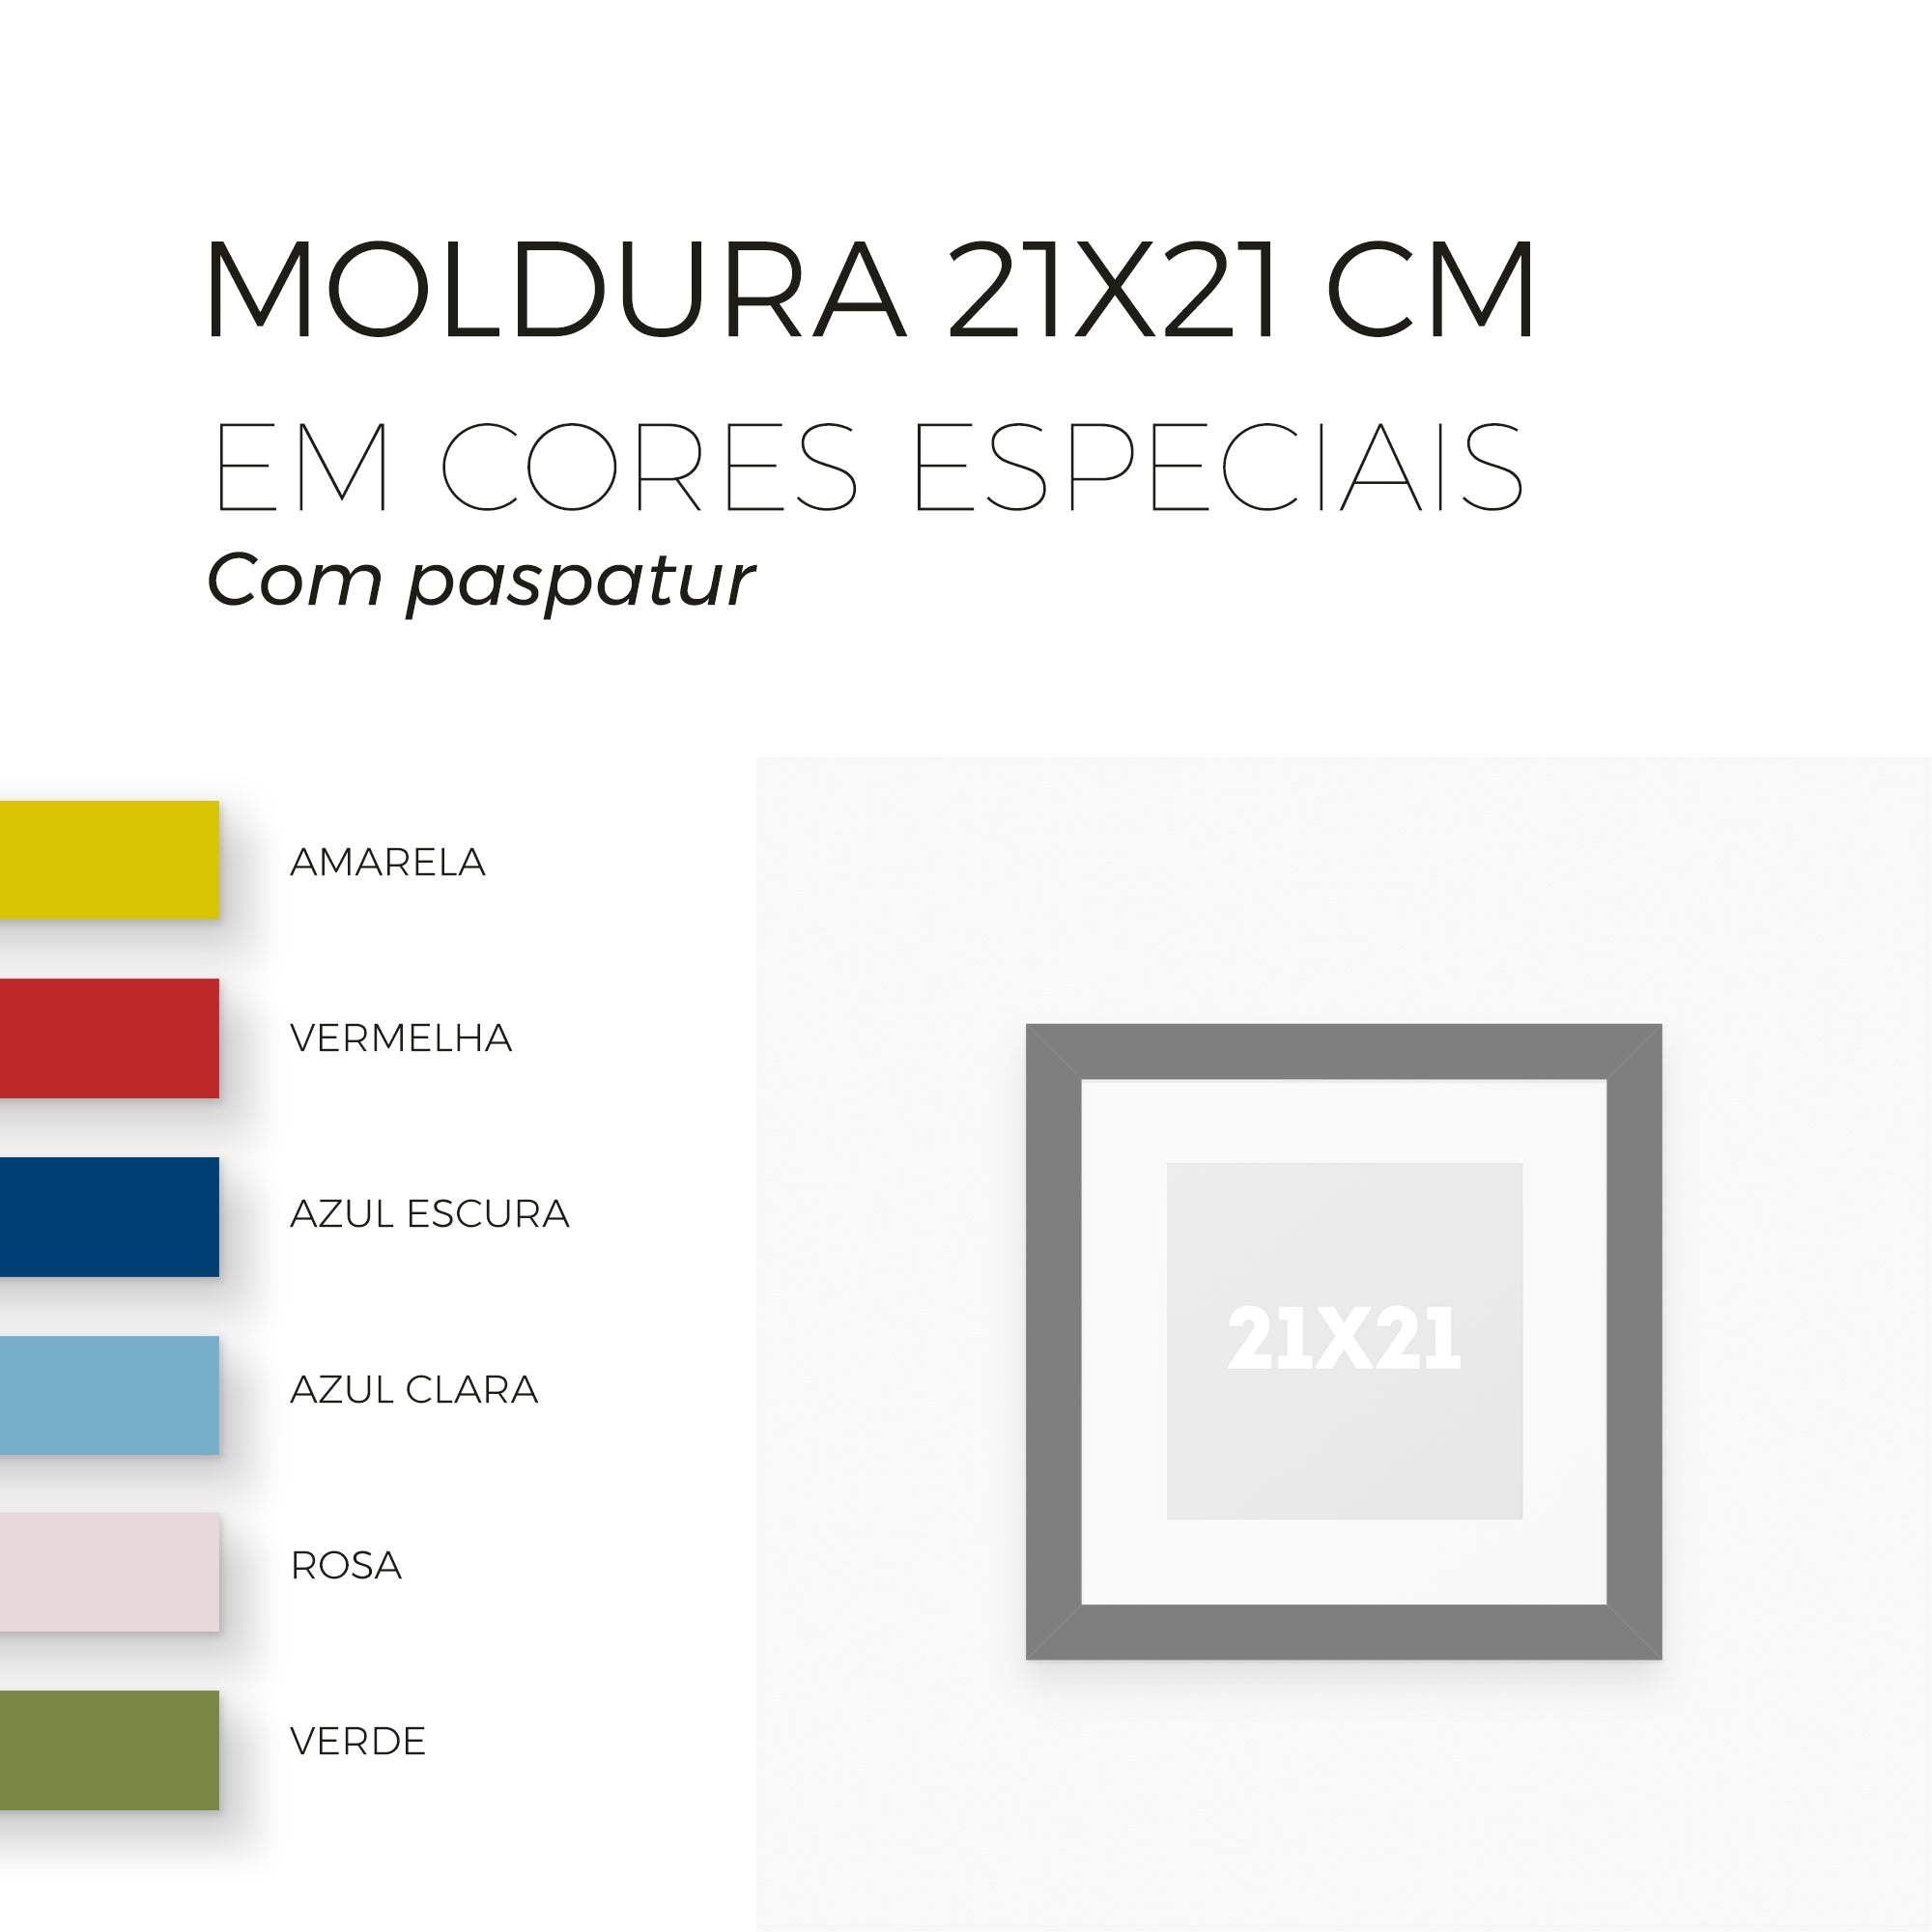 Moldura 21x21